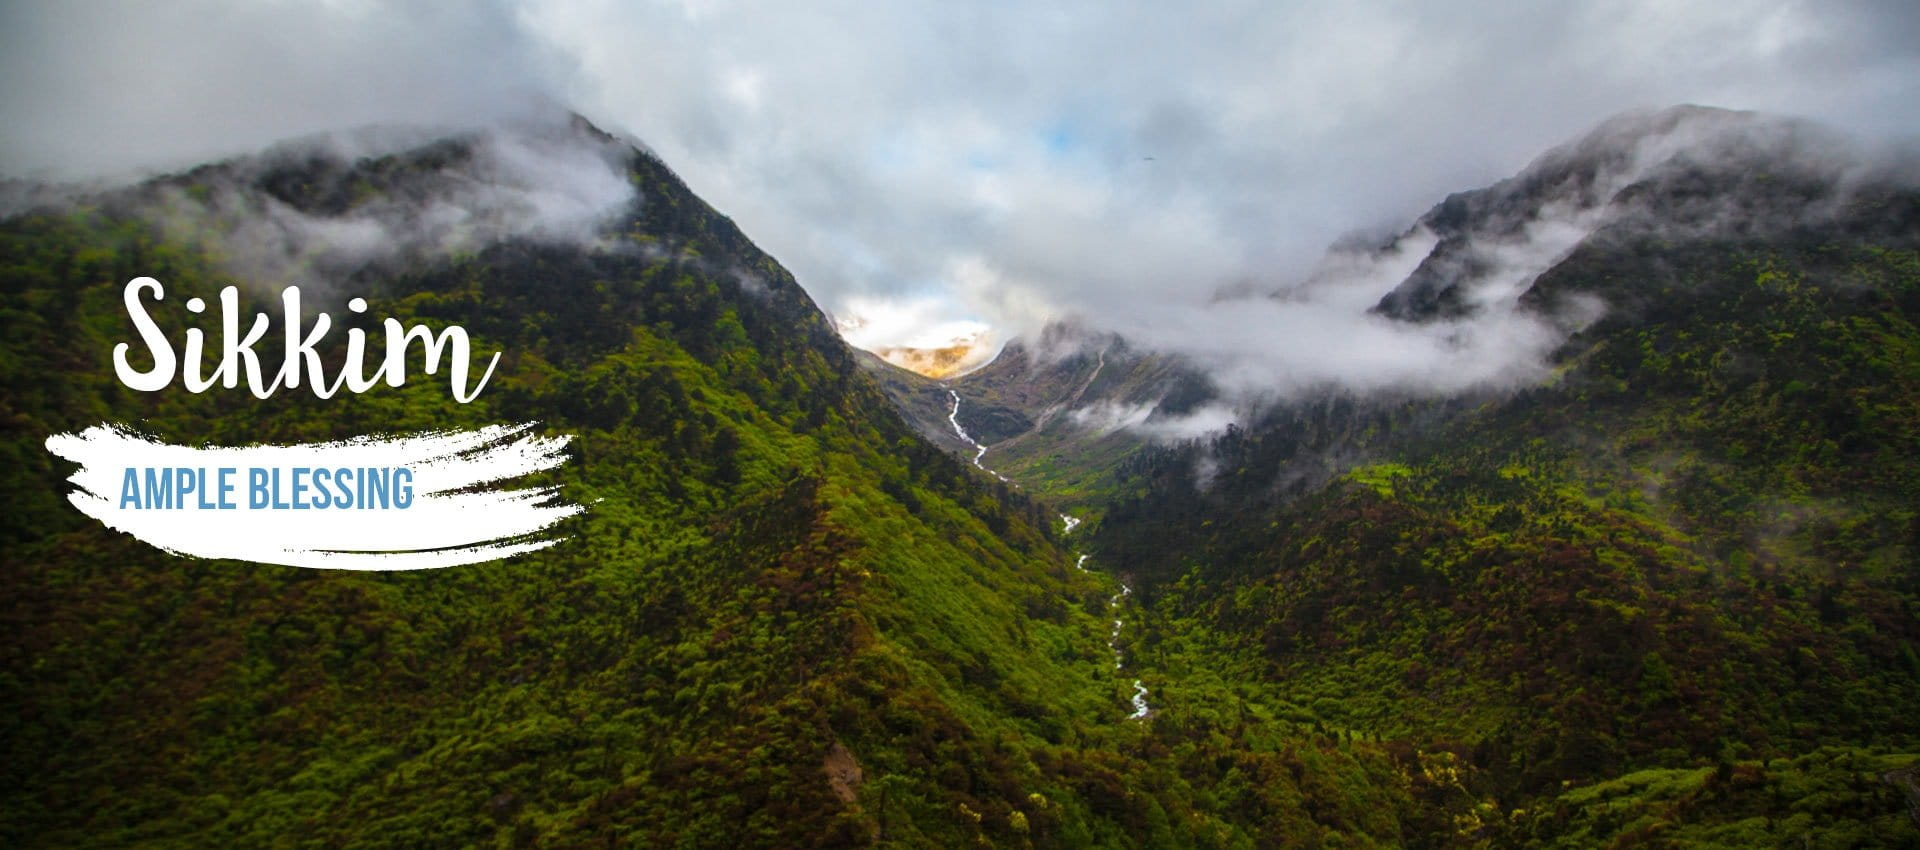 Sikkim Tour and travel - Av tours